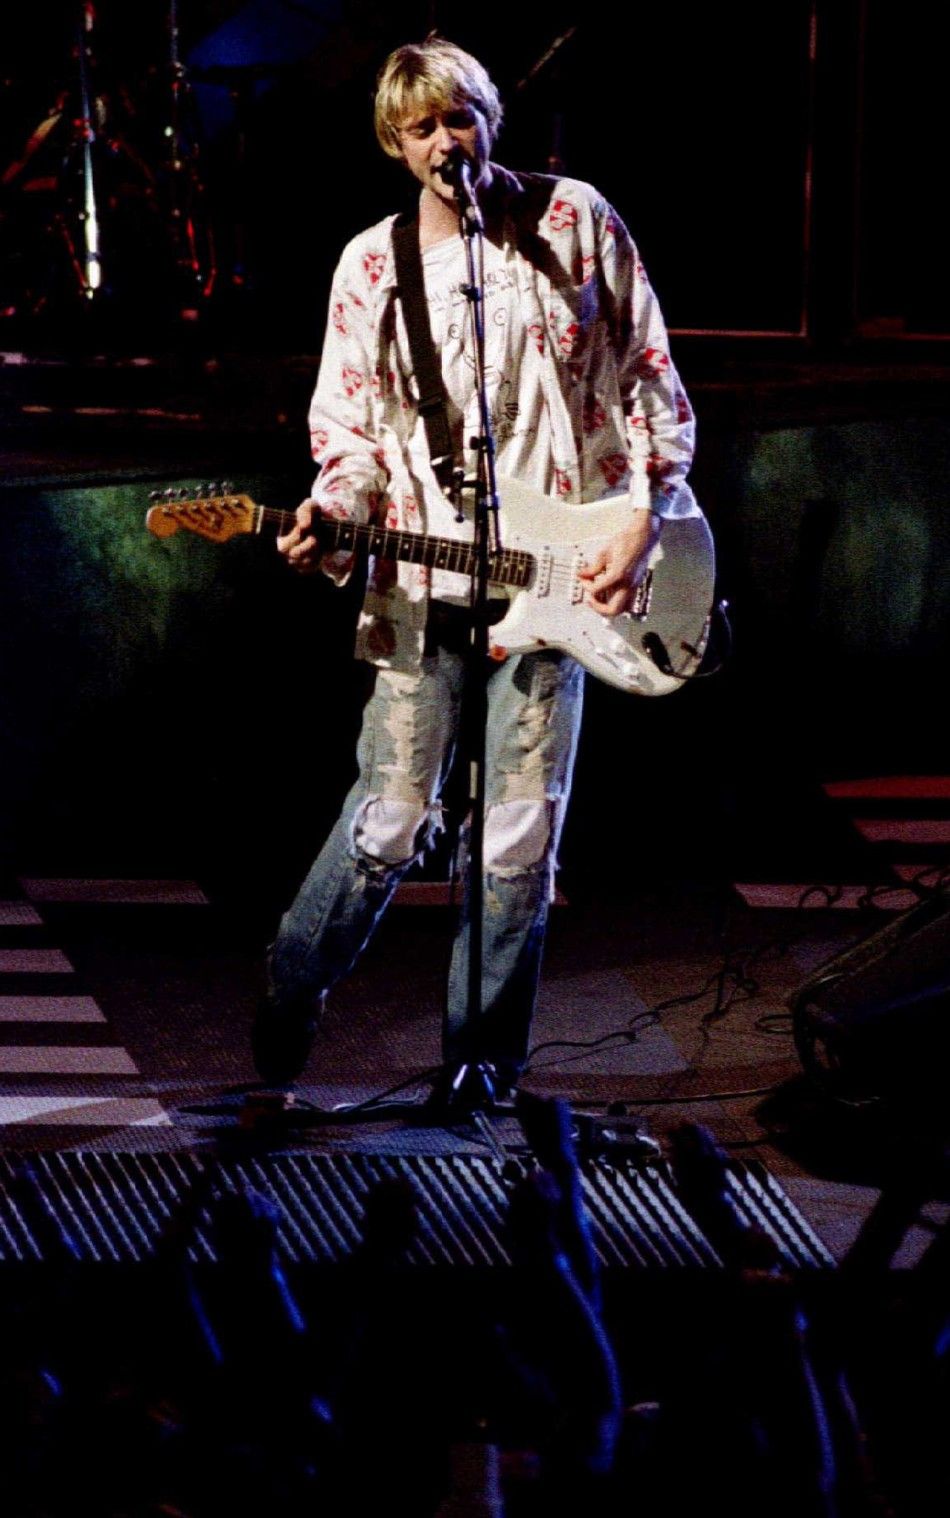 File photo of Kurt Cobain, lead singer of Nirvana, performing in Los Angeles